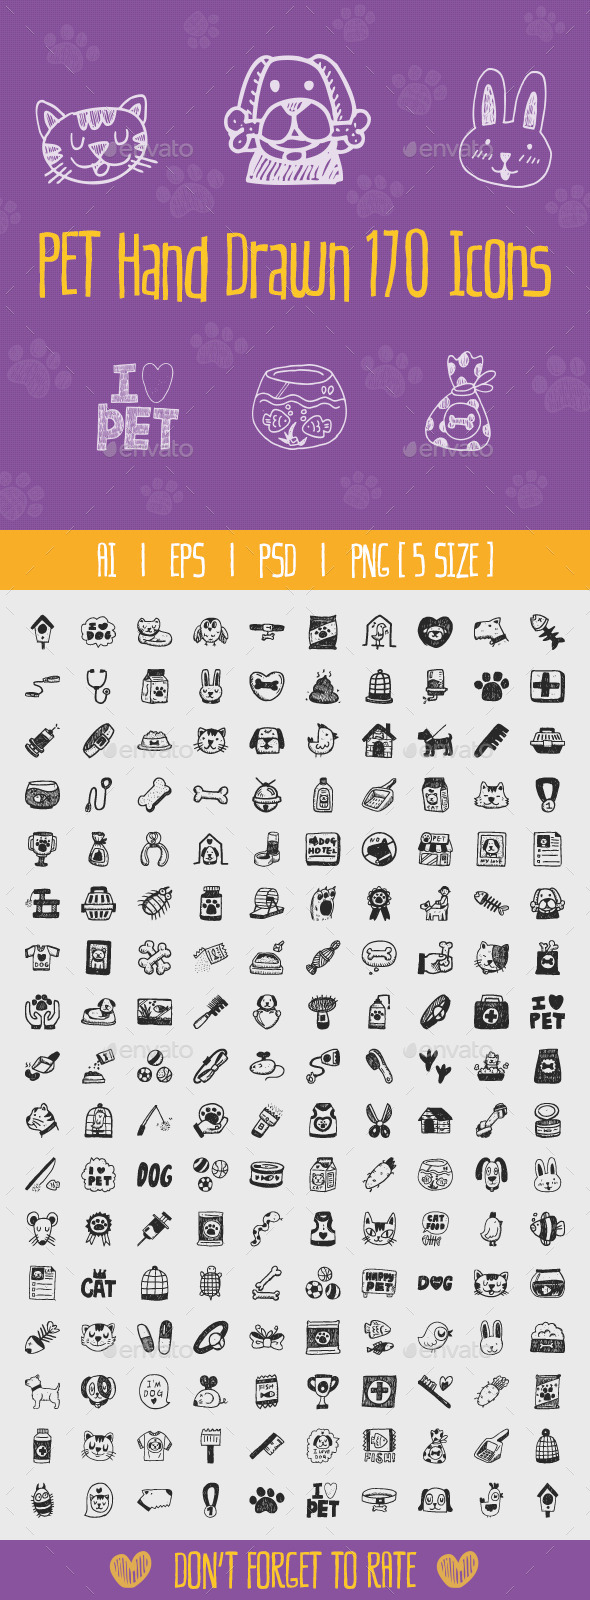 170枚手绘宠物图标素材包 Pet Hand Drawn Icons插图